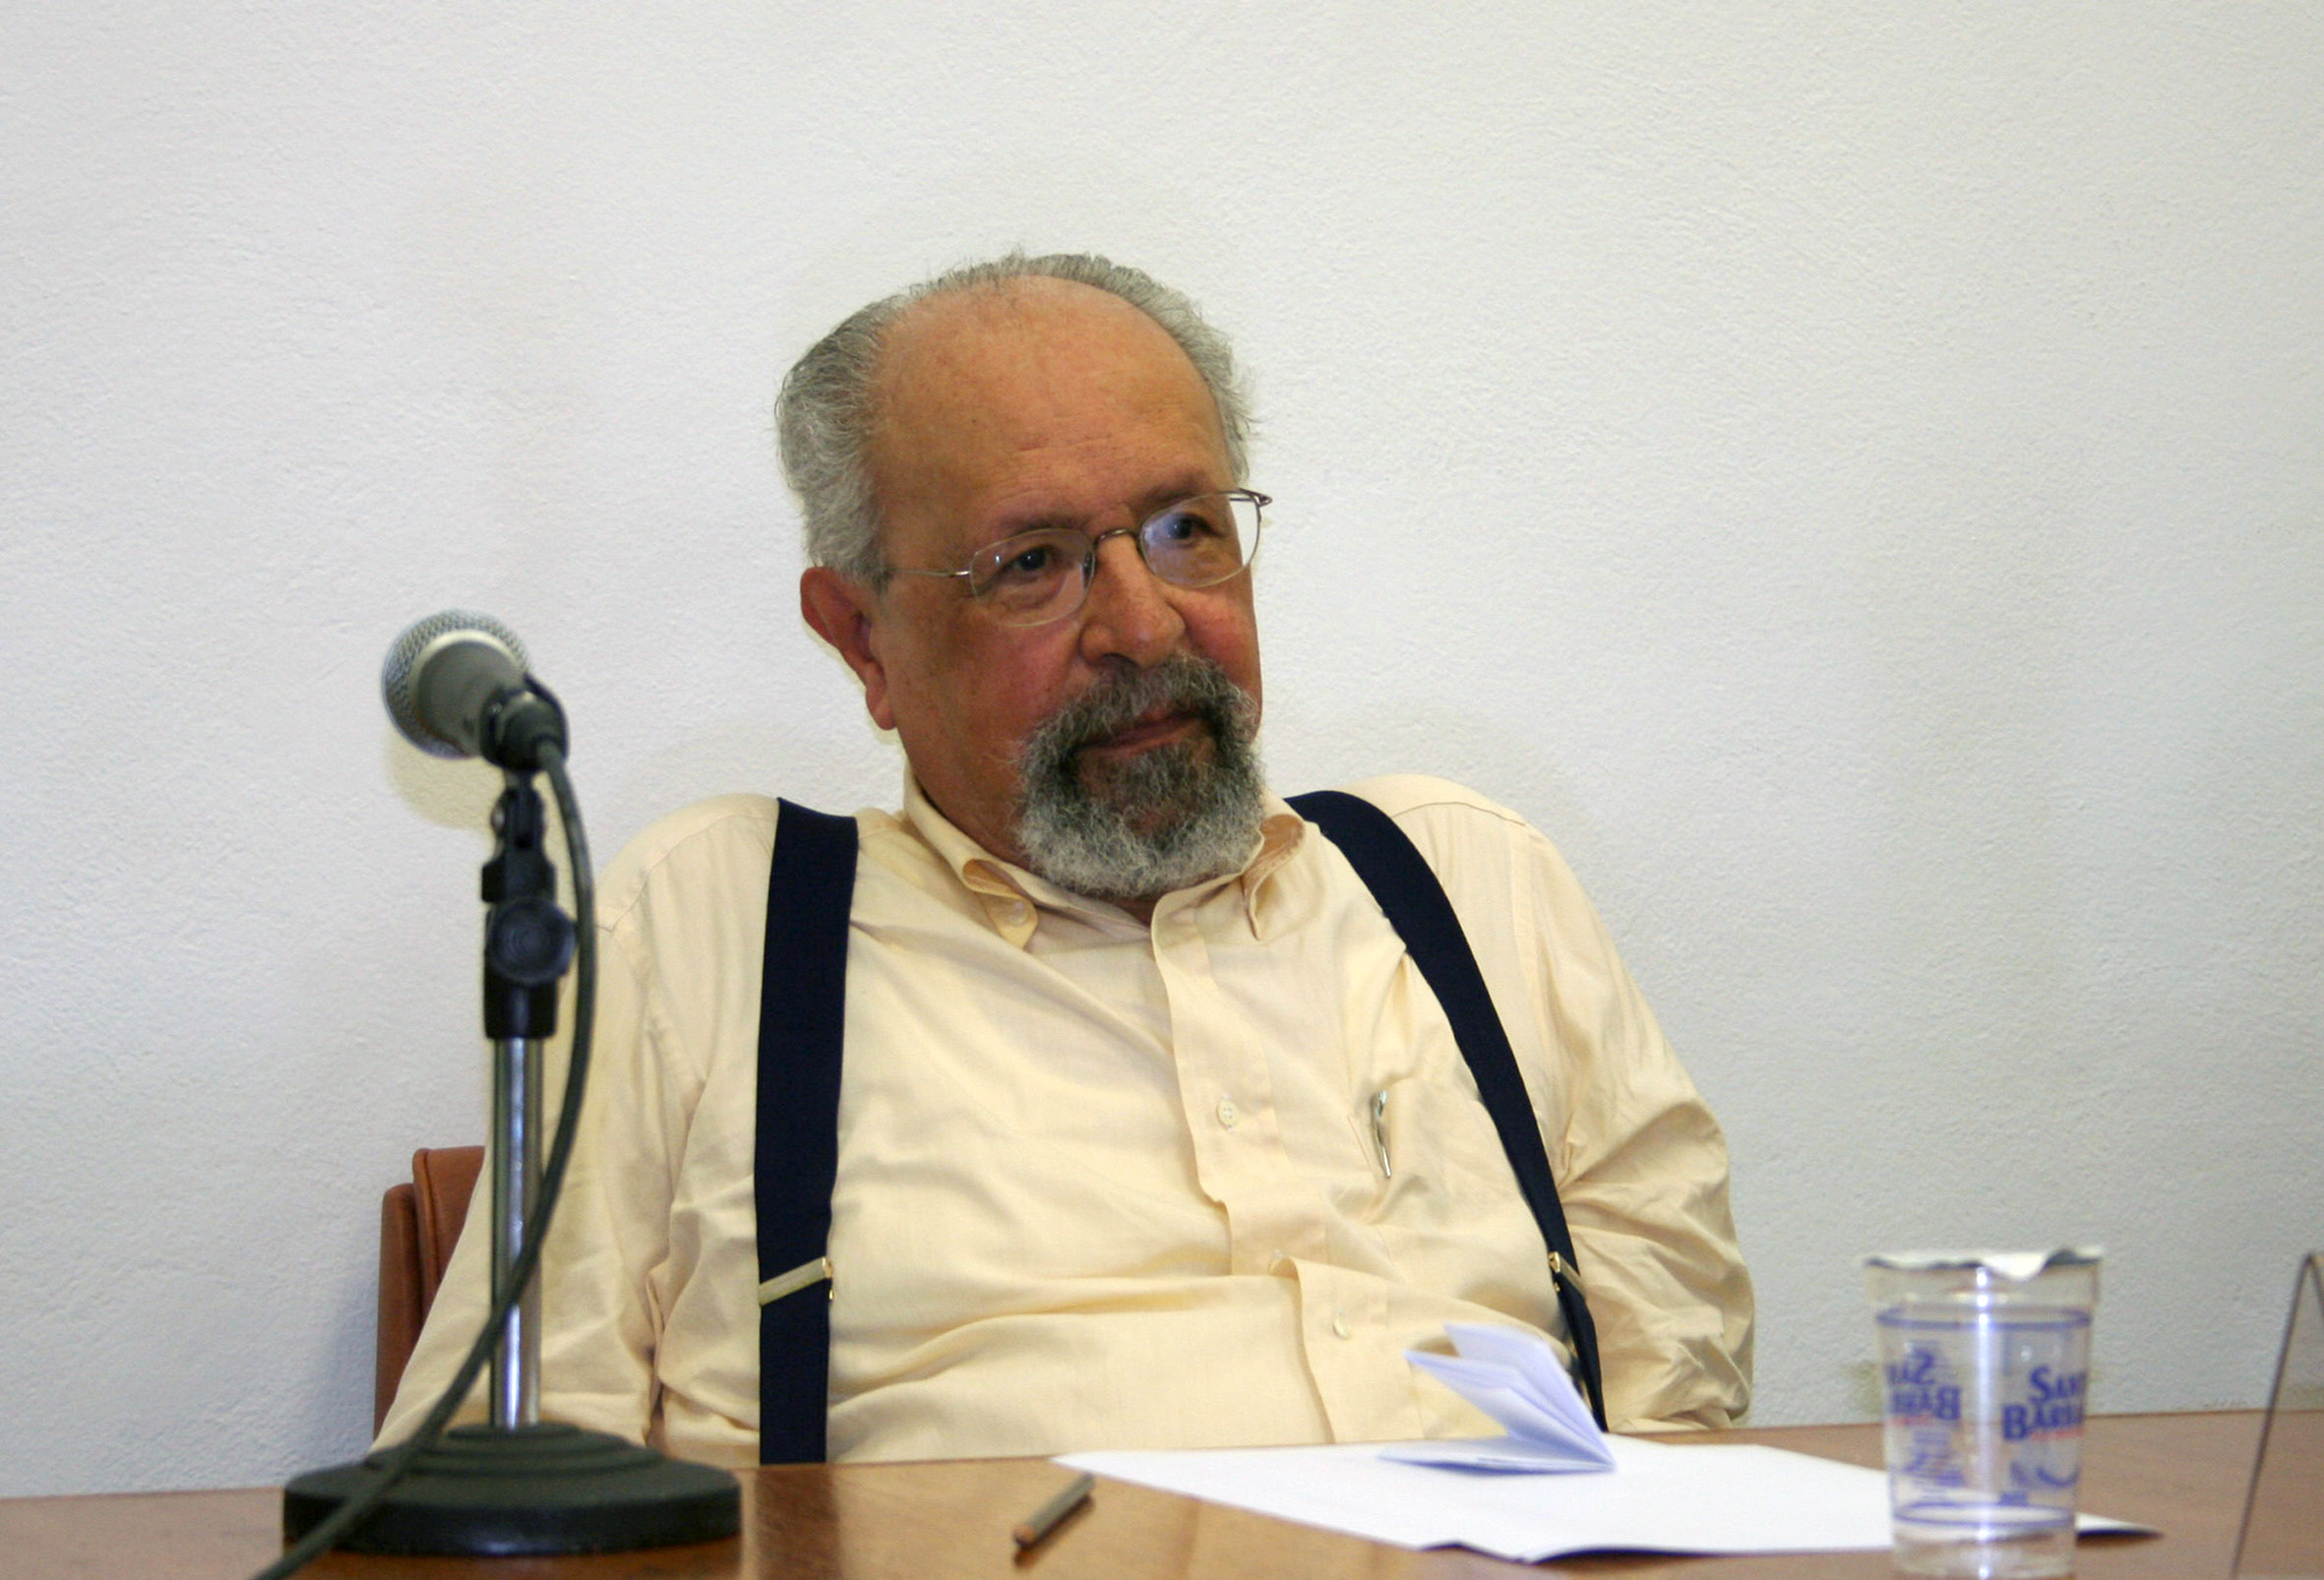 Oliveiros Ferreira